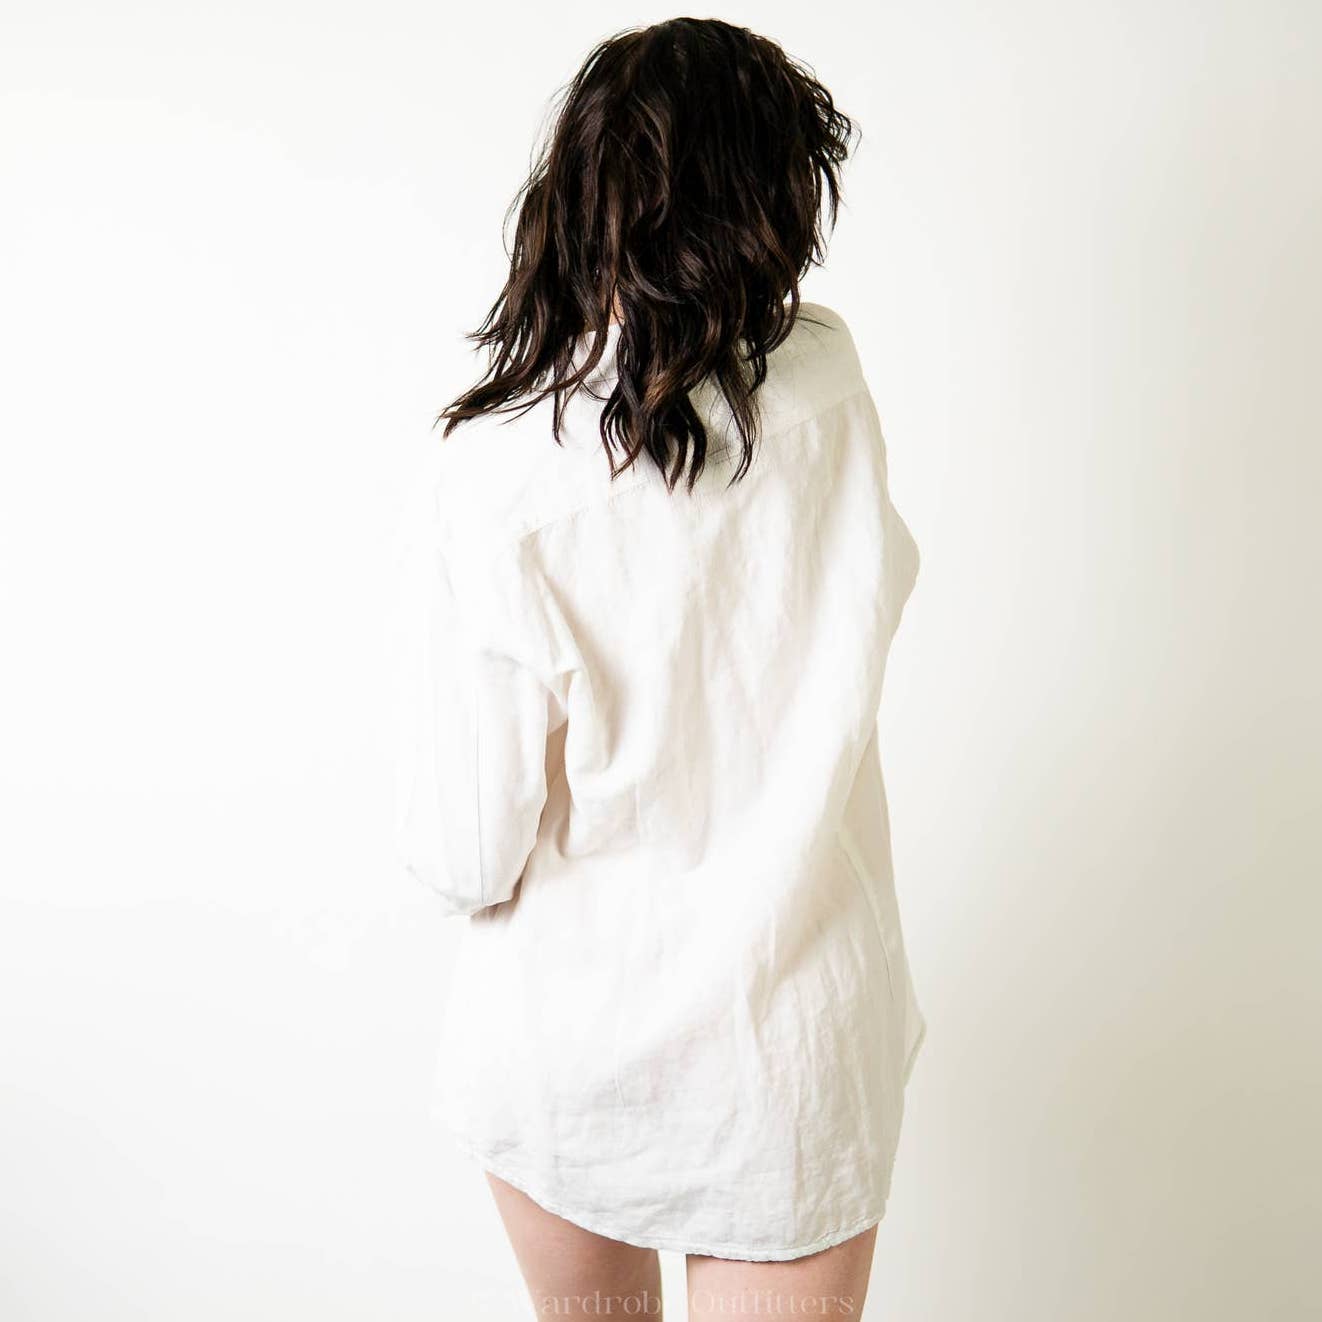 GUESS Slim Fit White Linen Oxford Dress Shirt - XL